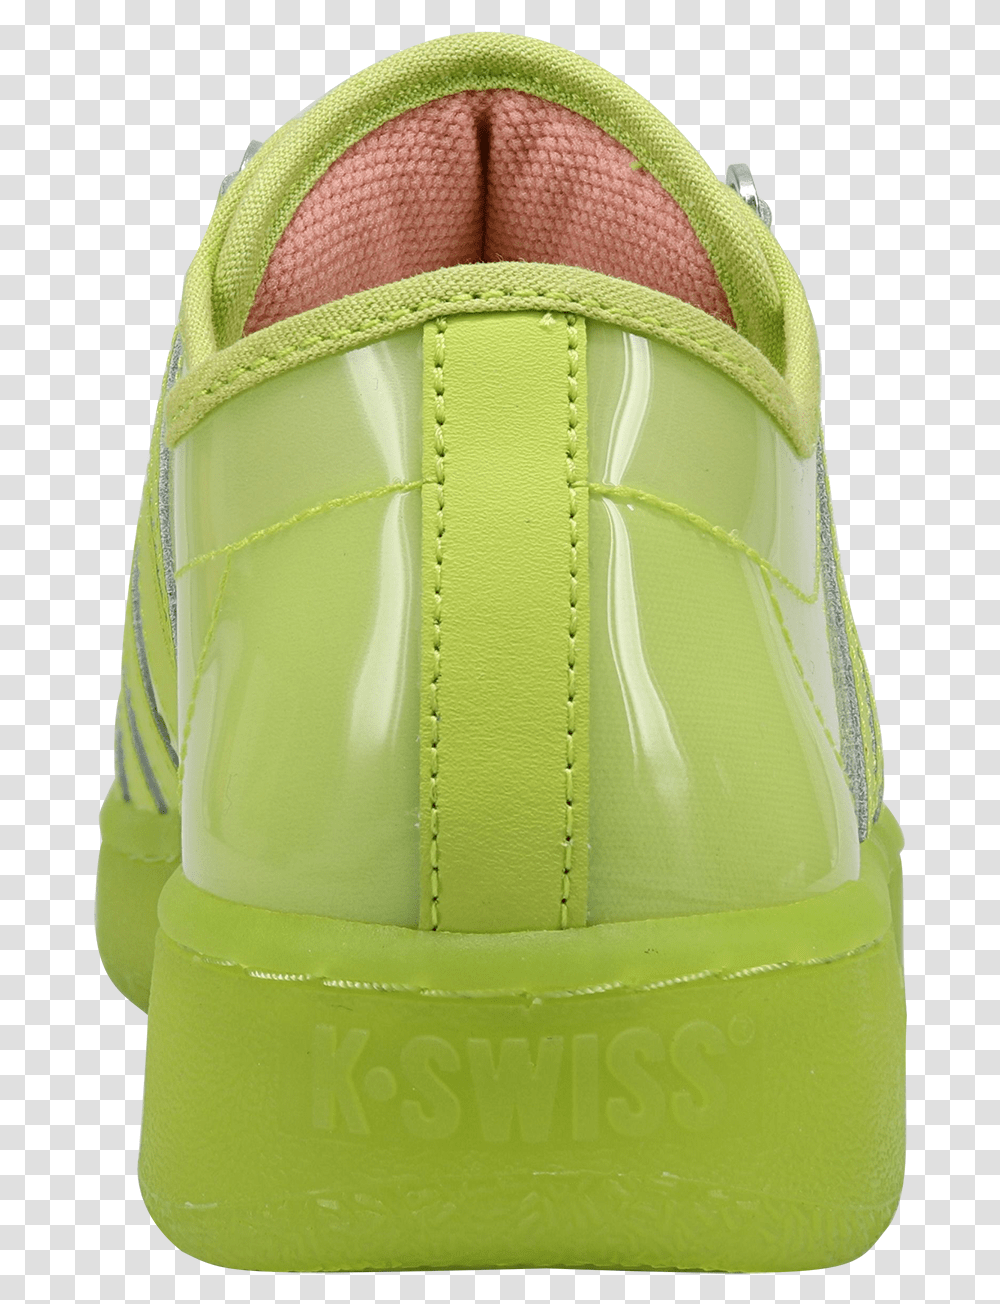 K Swiss X Ghostbusters X Foot Locker Classic, Apparel, Footwear, Bag Transparent Png